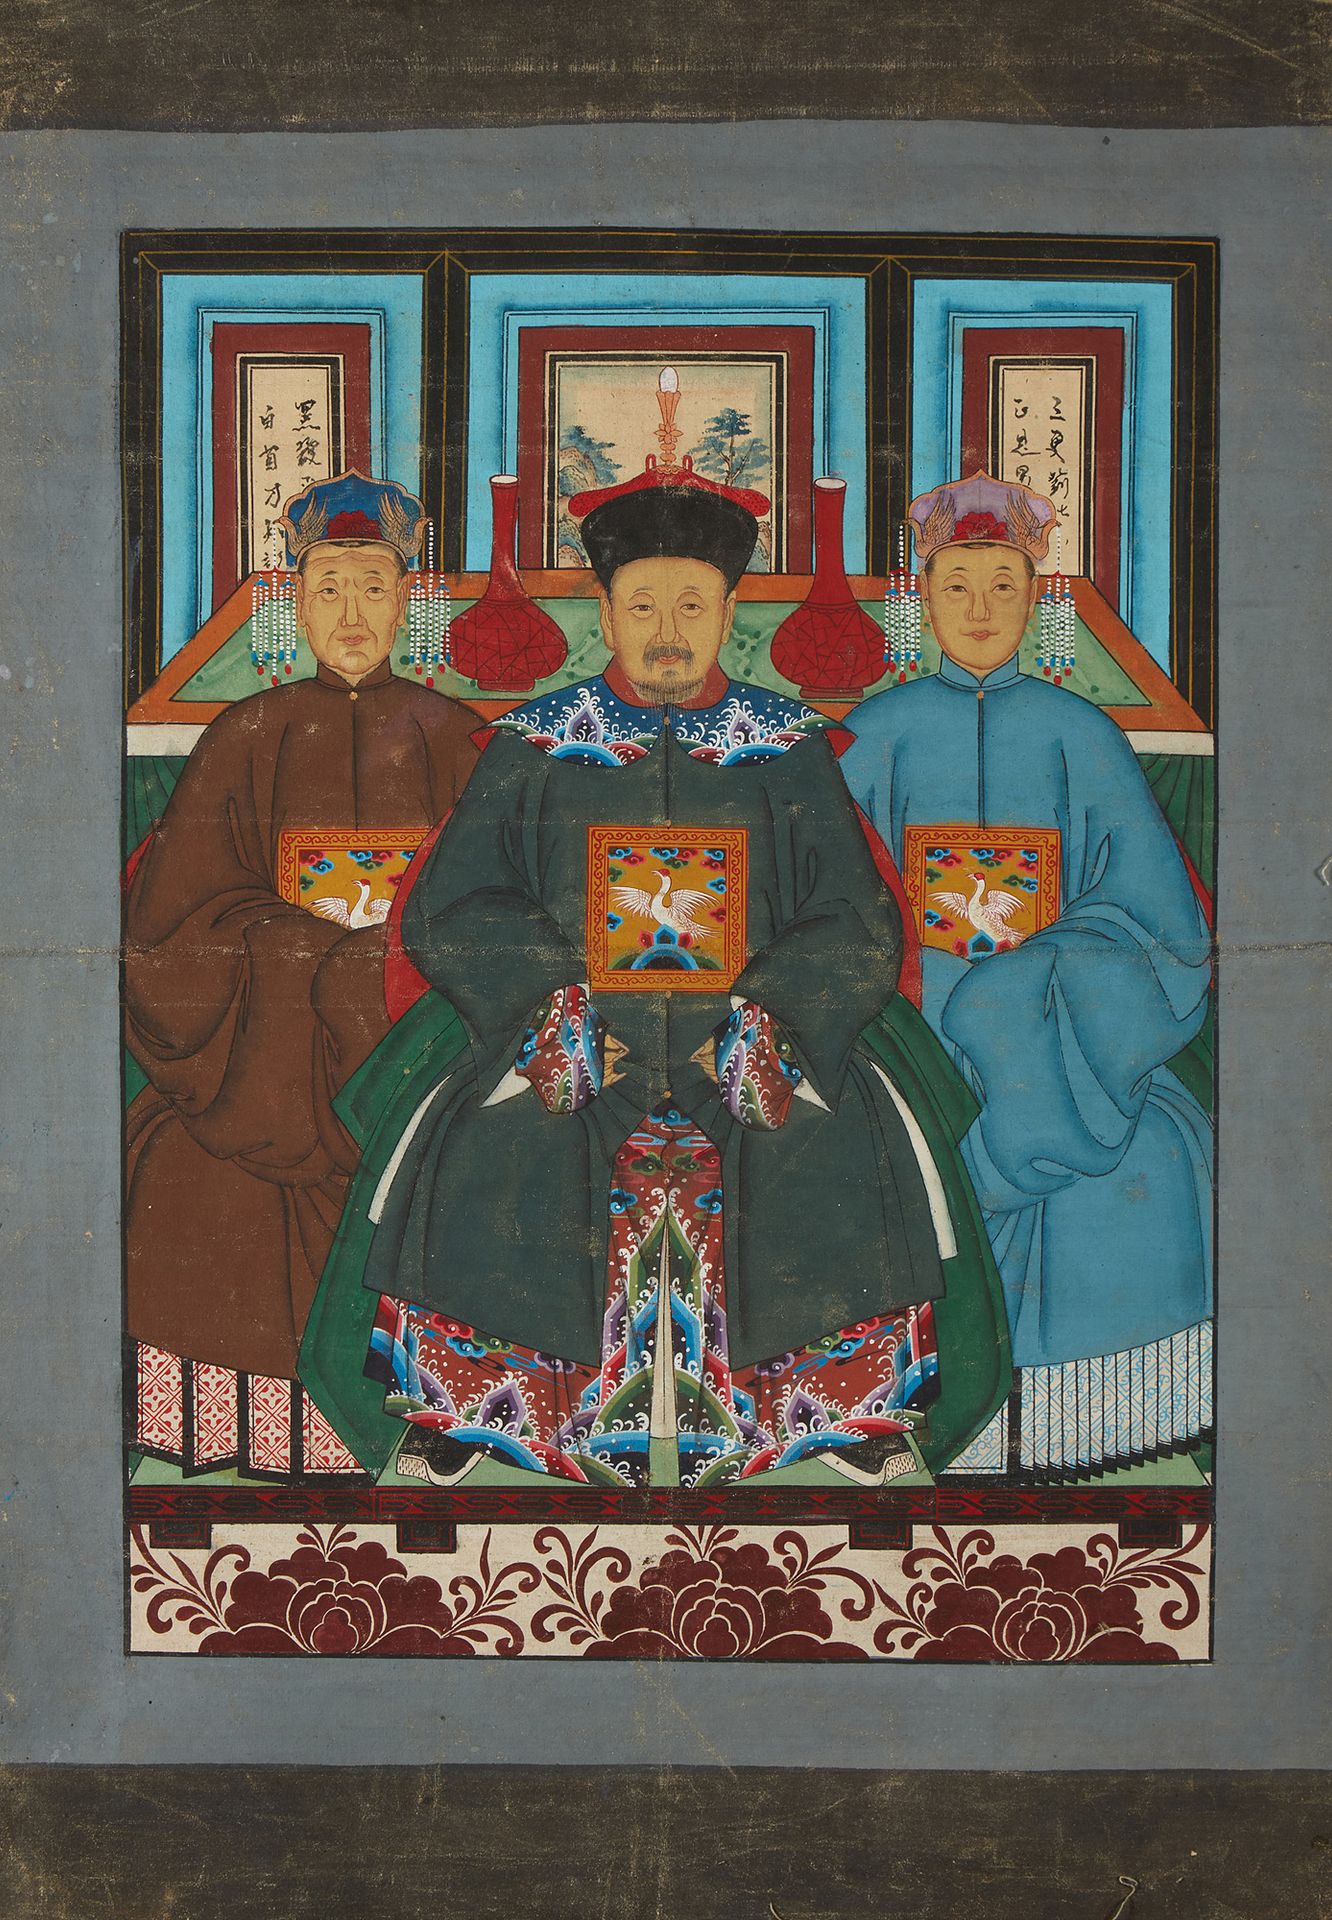 CHINE Portrait de trois dignitaires.
Peinture sur tissu.
Dim.: 80 x 67cm